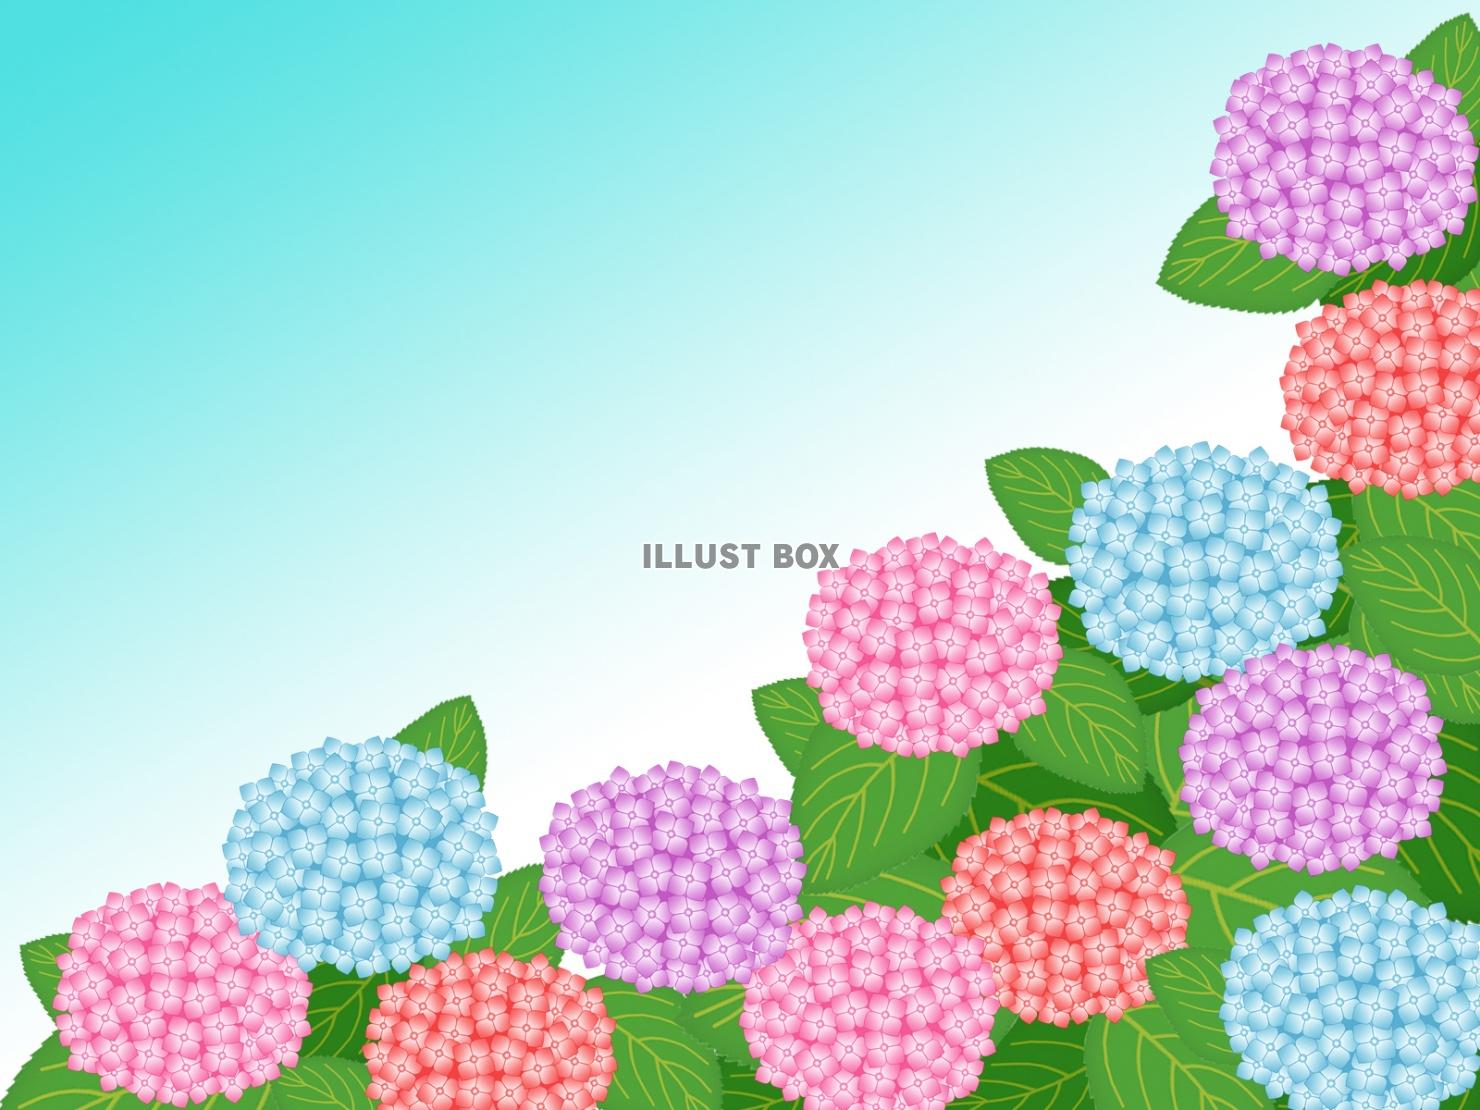 紫陽花の花模様壁紙画像シンプル背景素材イラスト